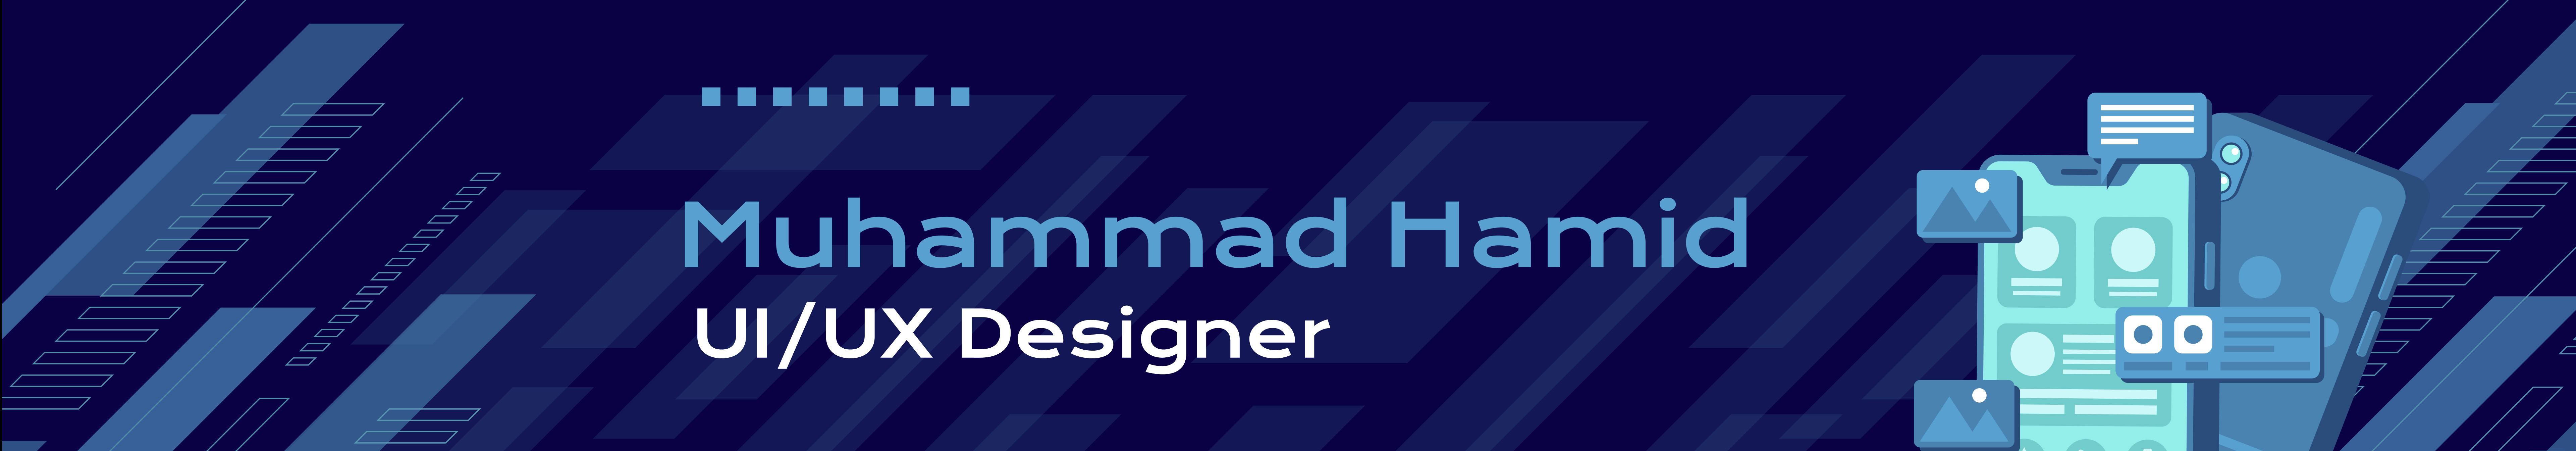 Profil-Banner von Muhammad Hamid